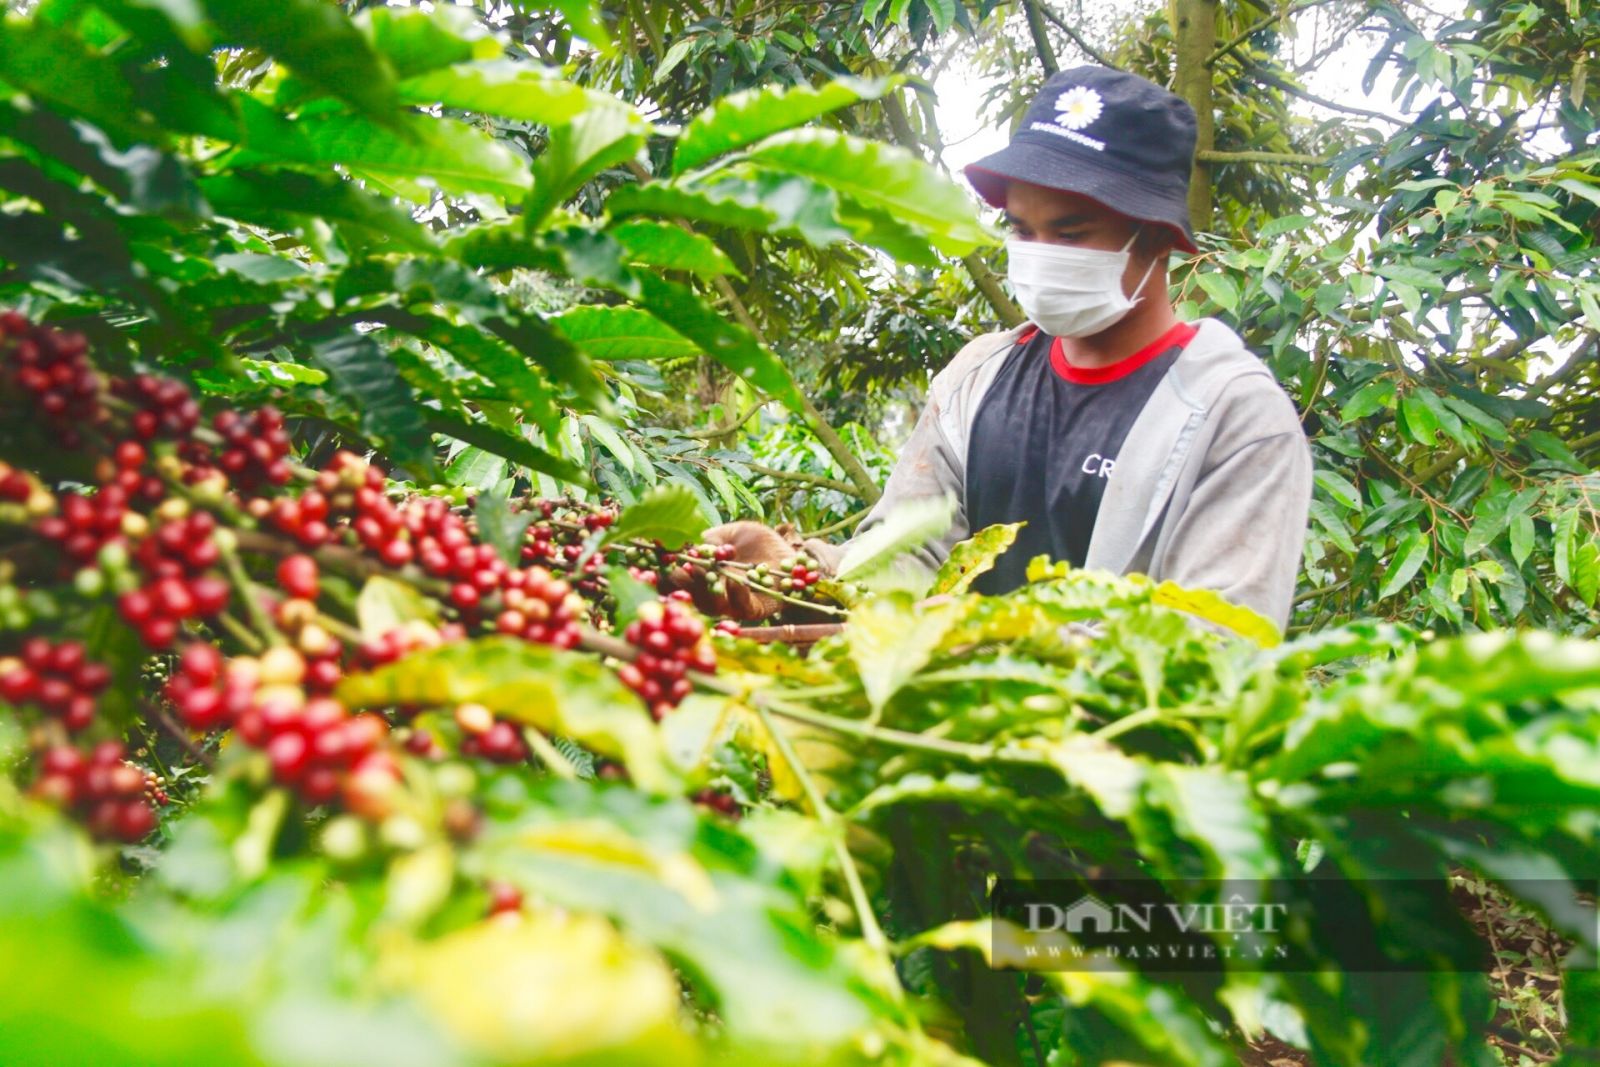 Mỹ bất ngờ tăng mua cà phê của Việt Nam, giá cà phê xuất khẩu tăng mạnh - Ảnh 1.